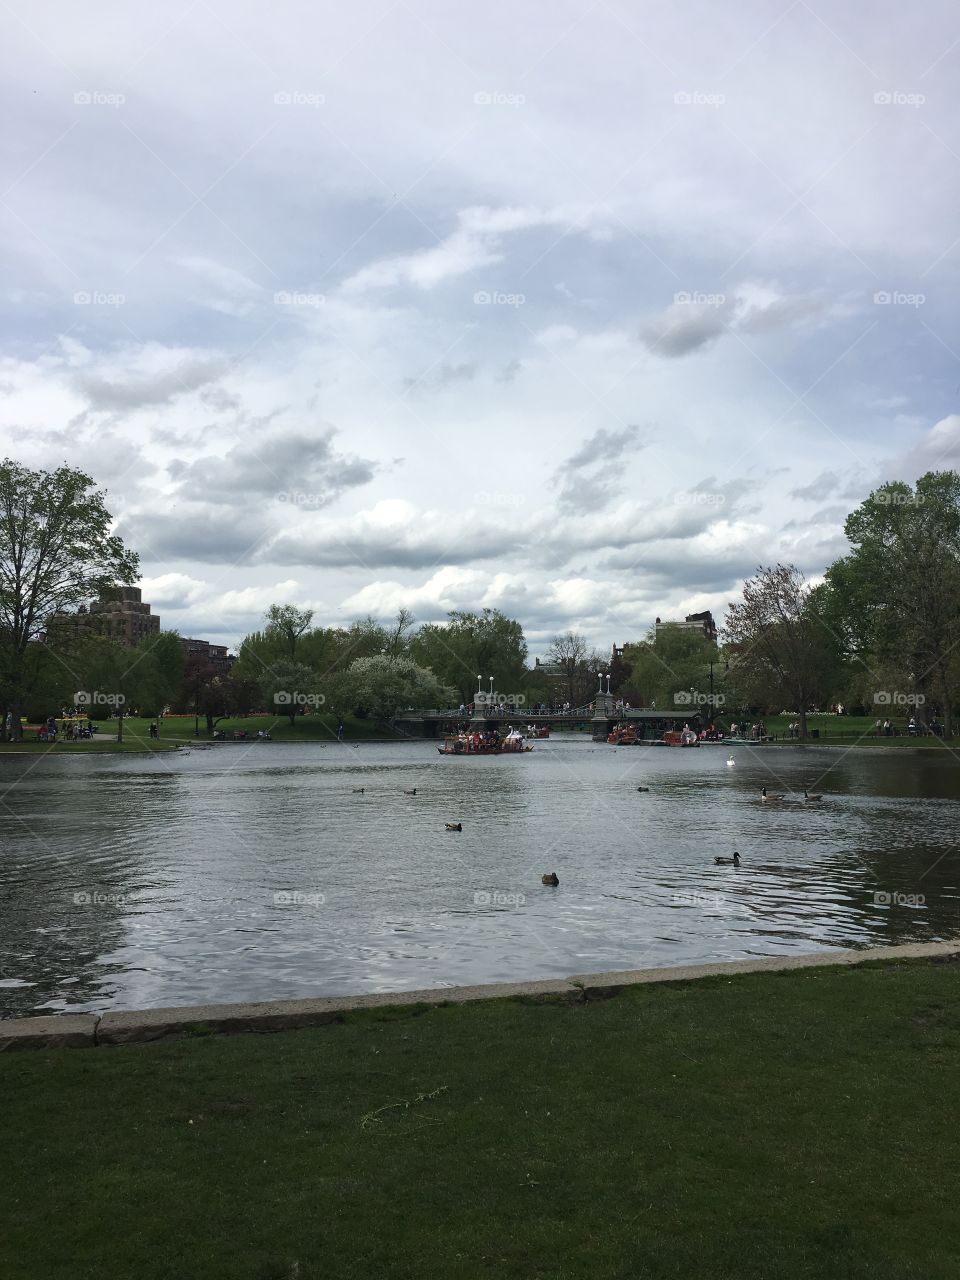 Boston Public Garden Pond